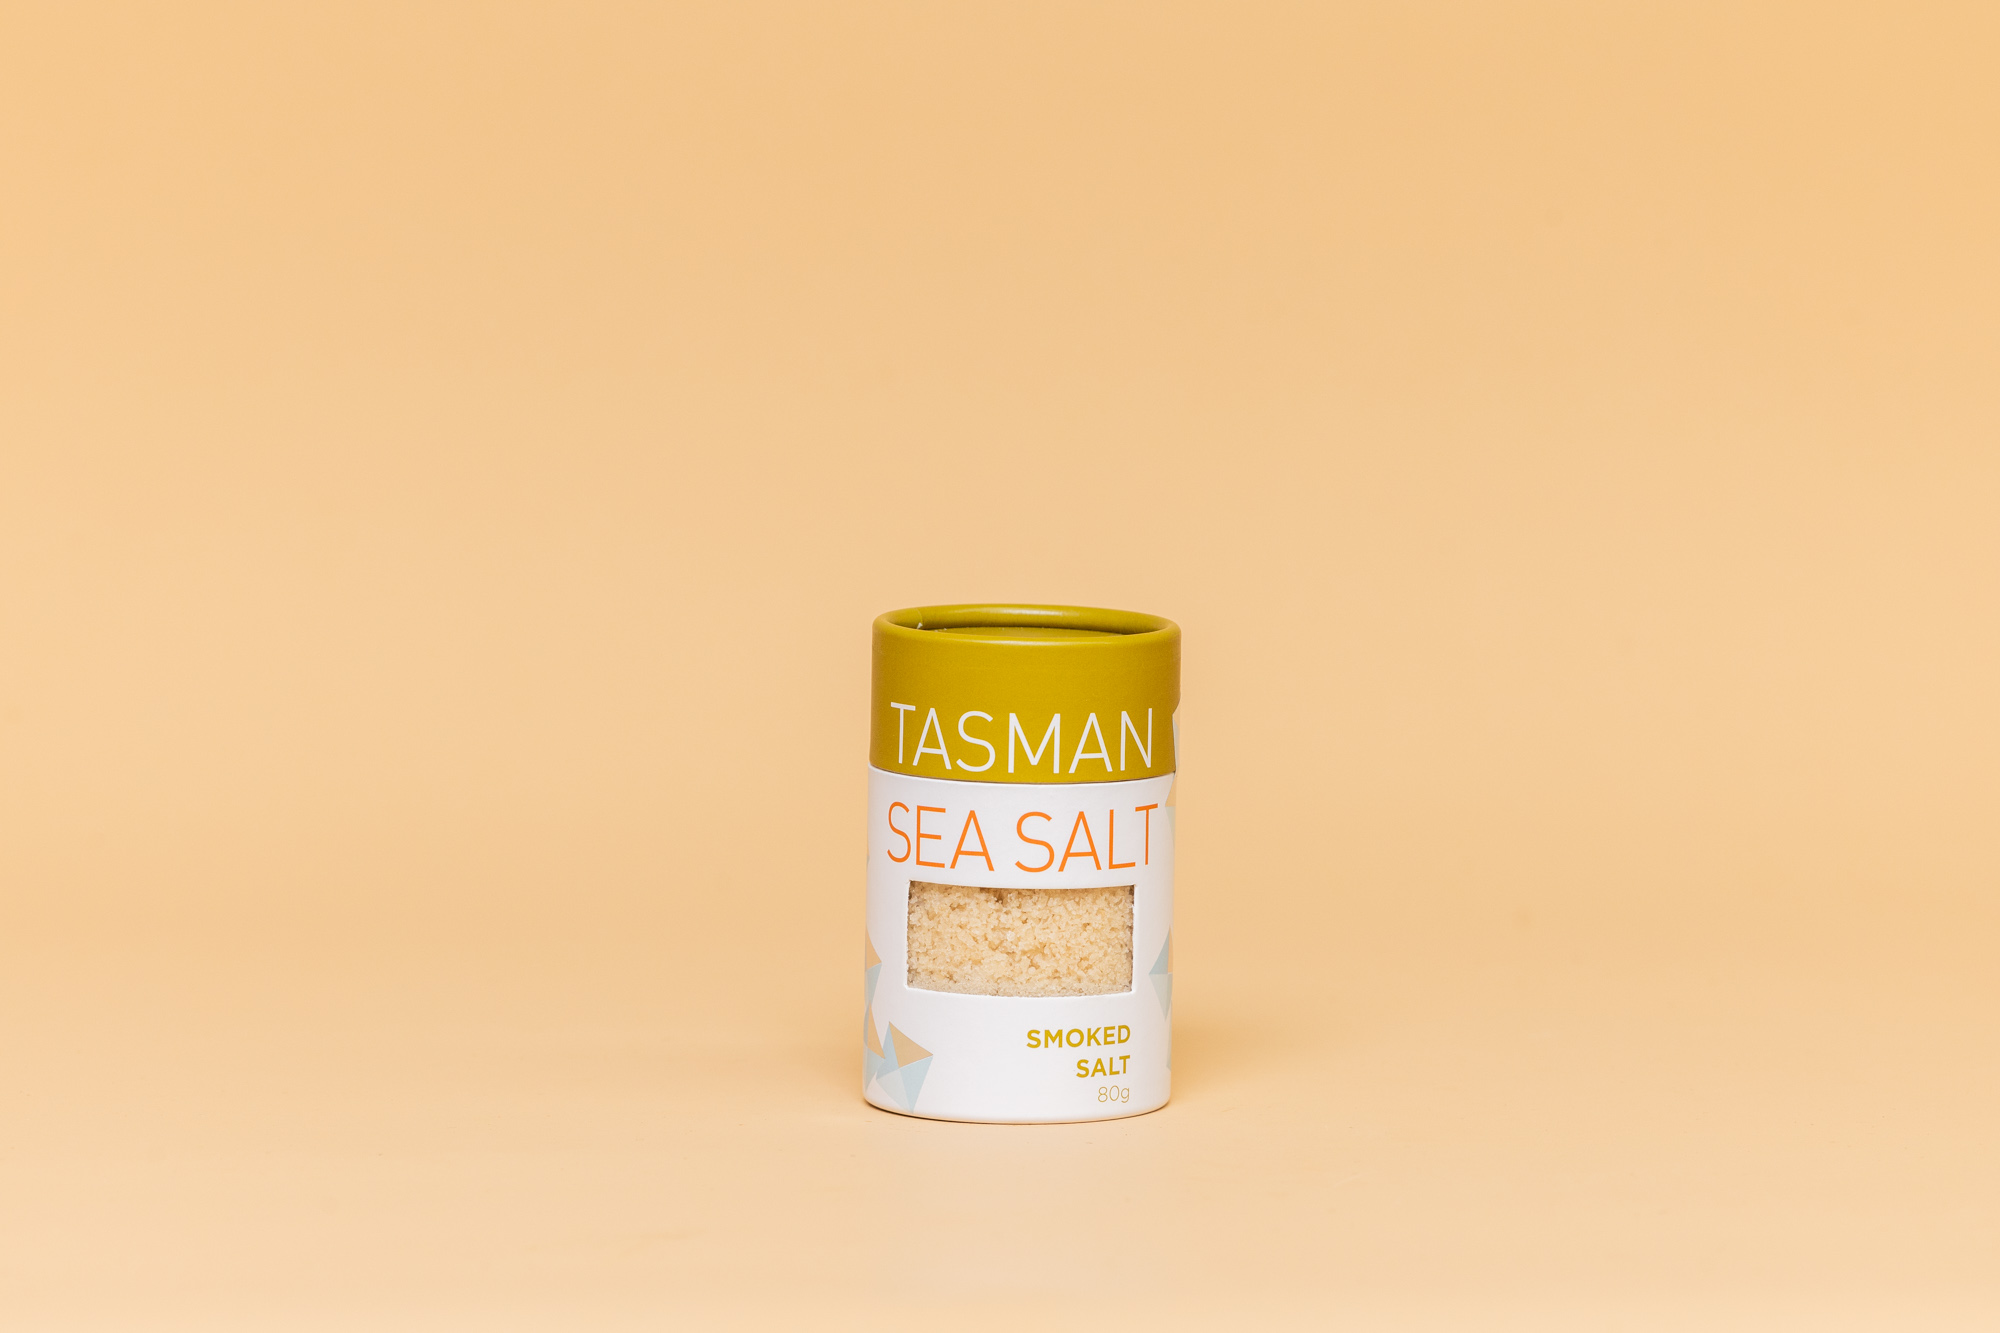 Tasman sea salt smoked 80g 